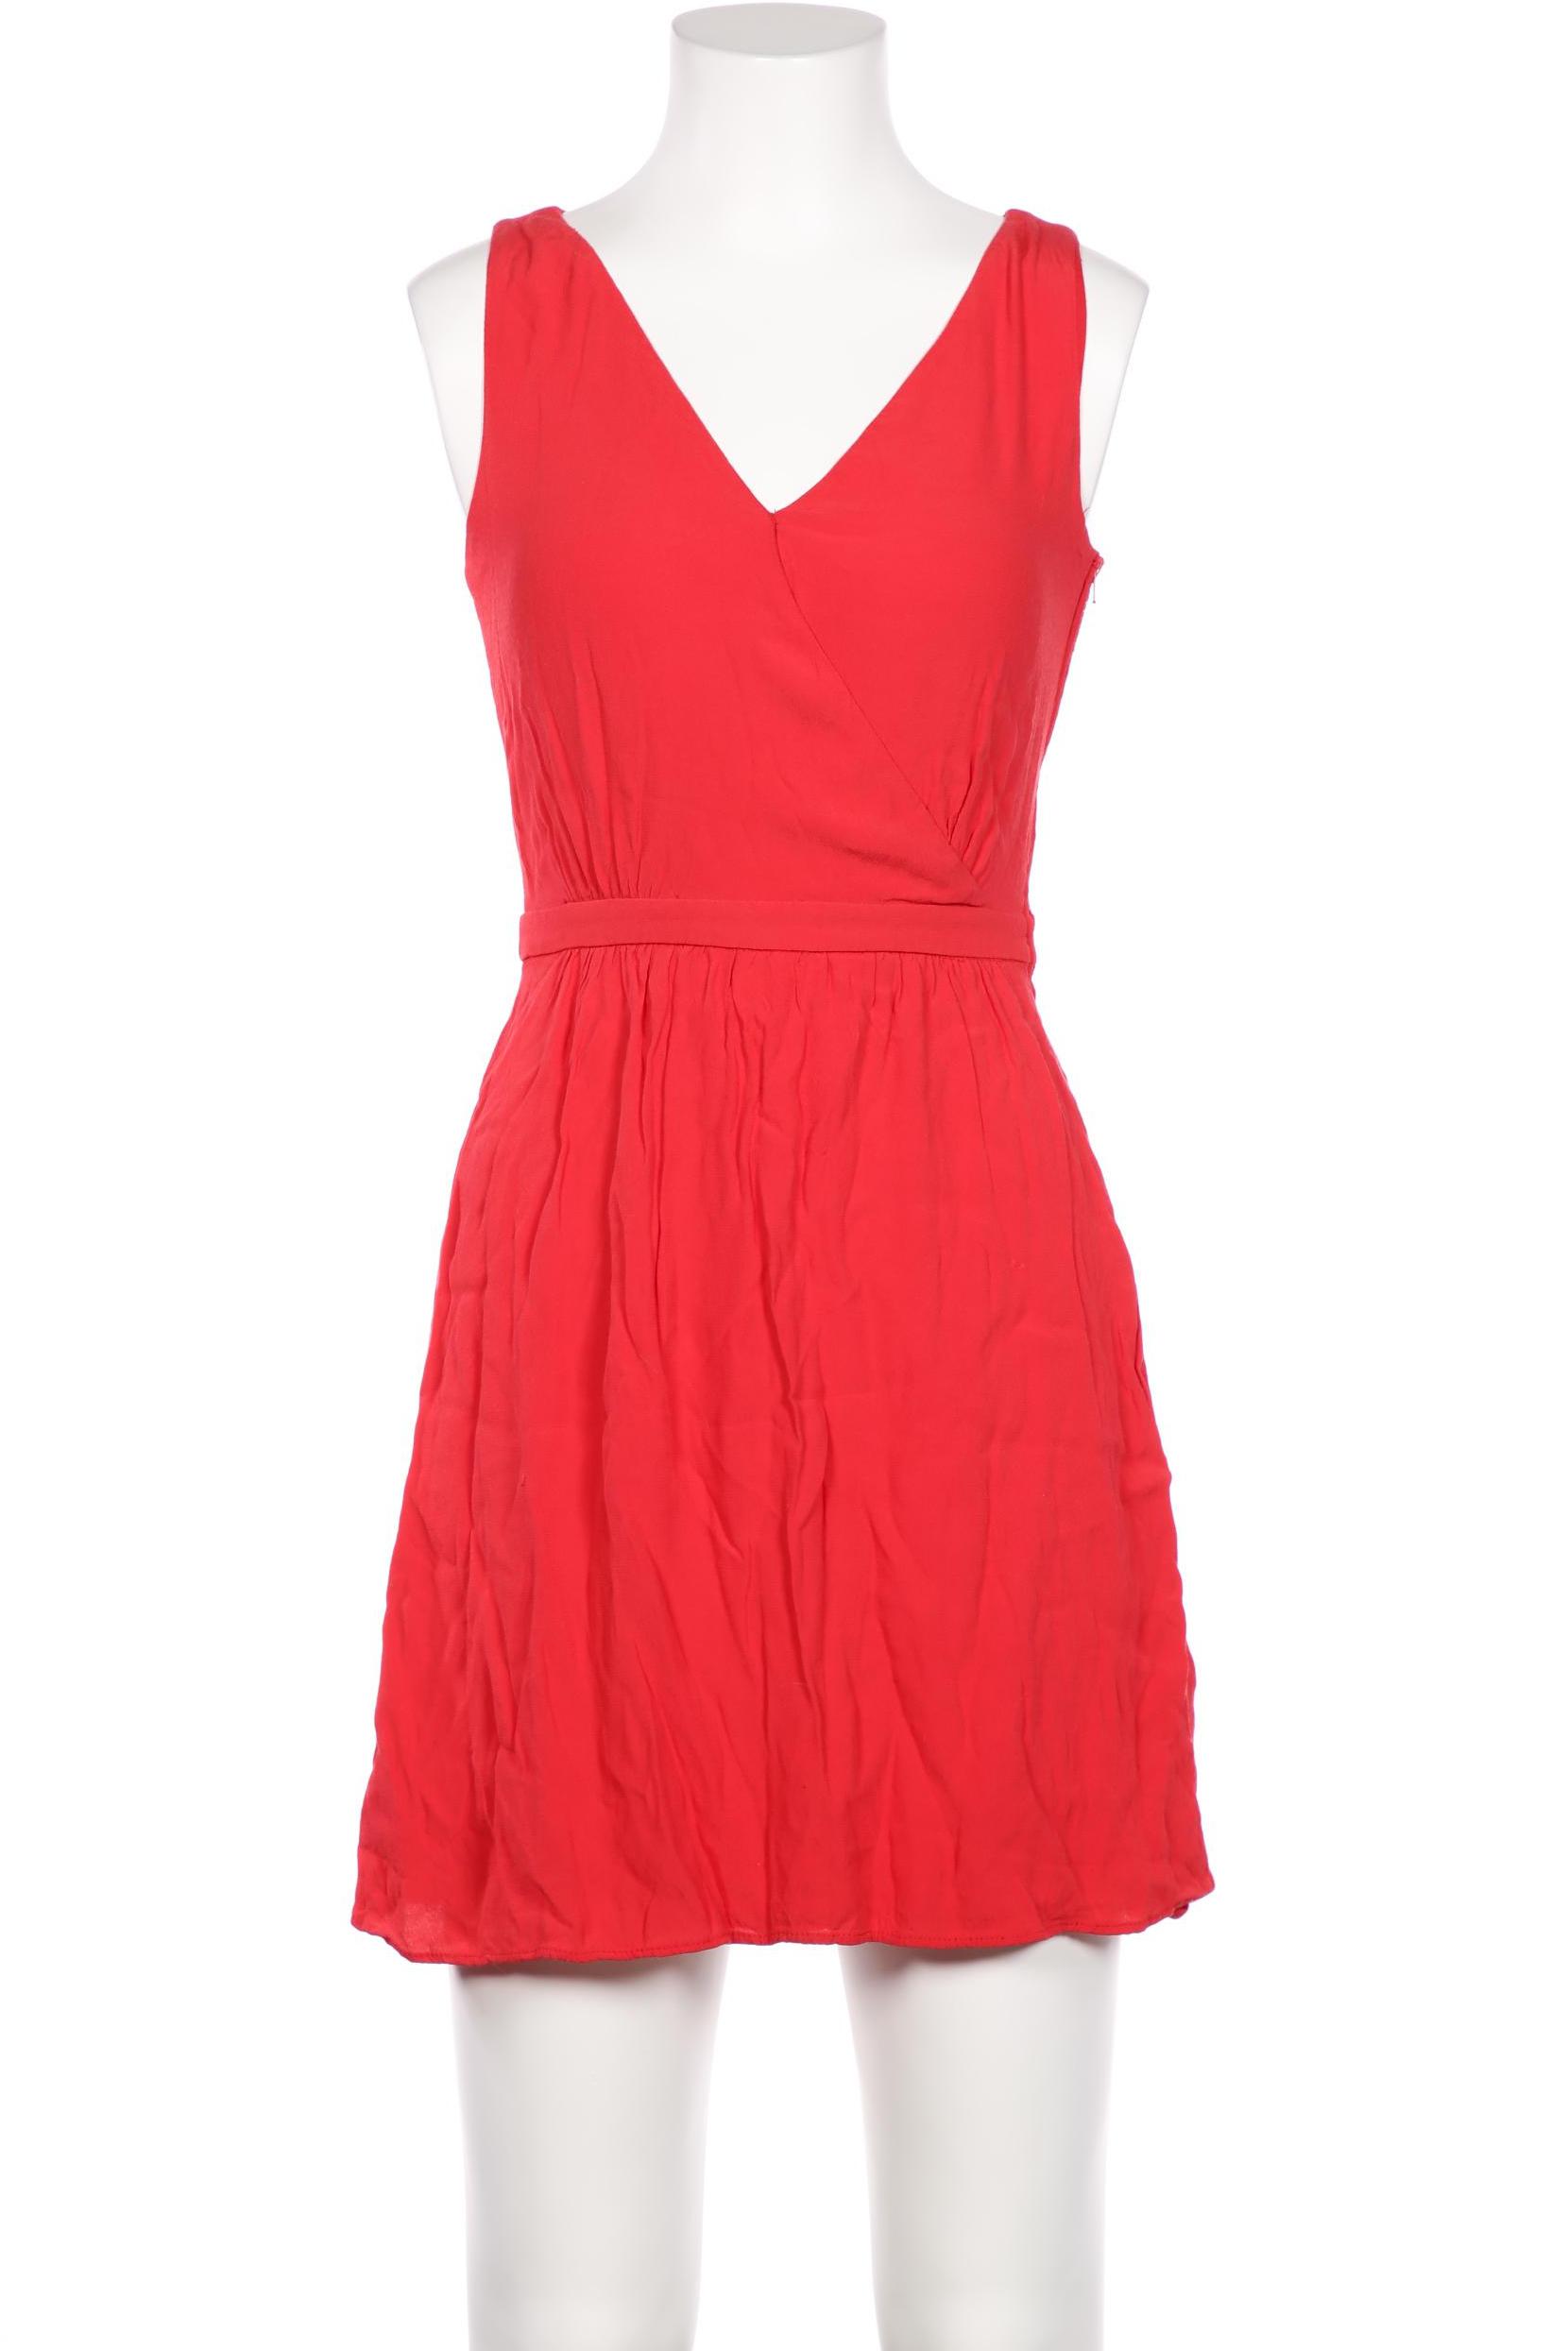 NAF NAF Damen Kleid, rot, Gr. 34 von Naf Naf